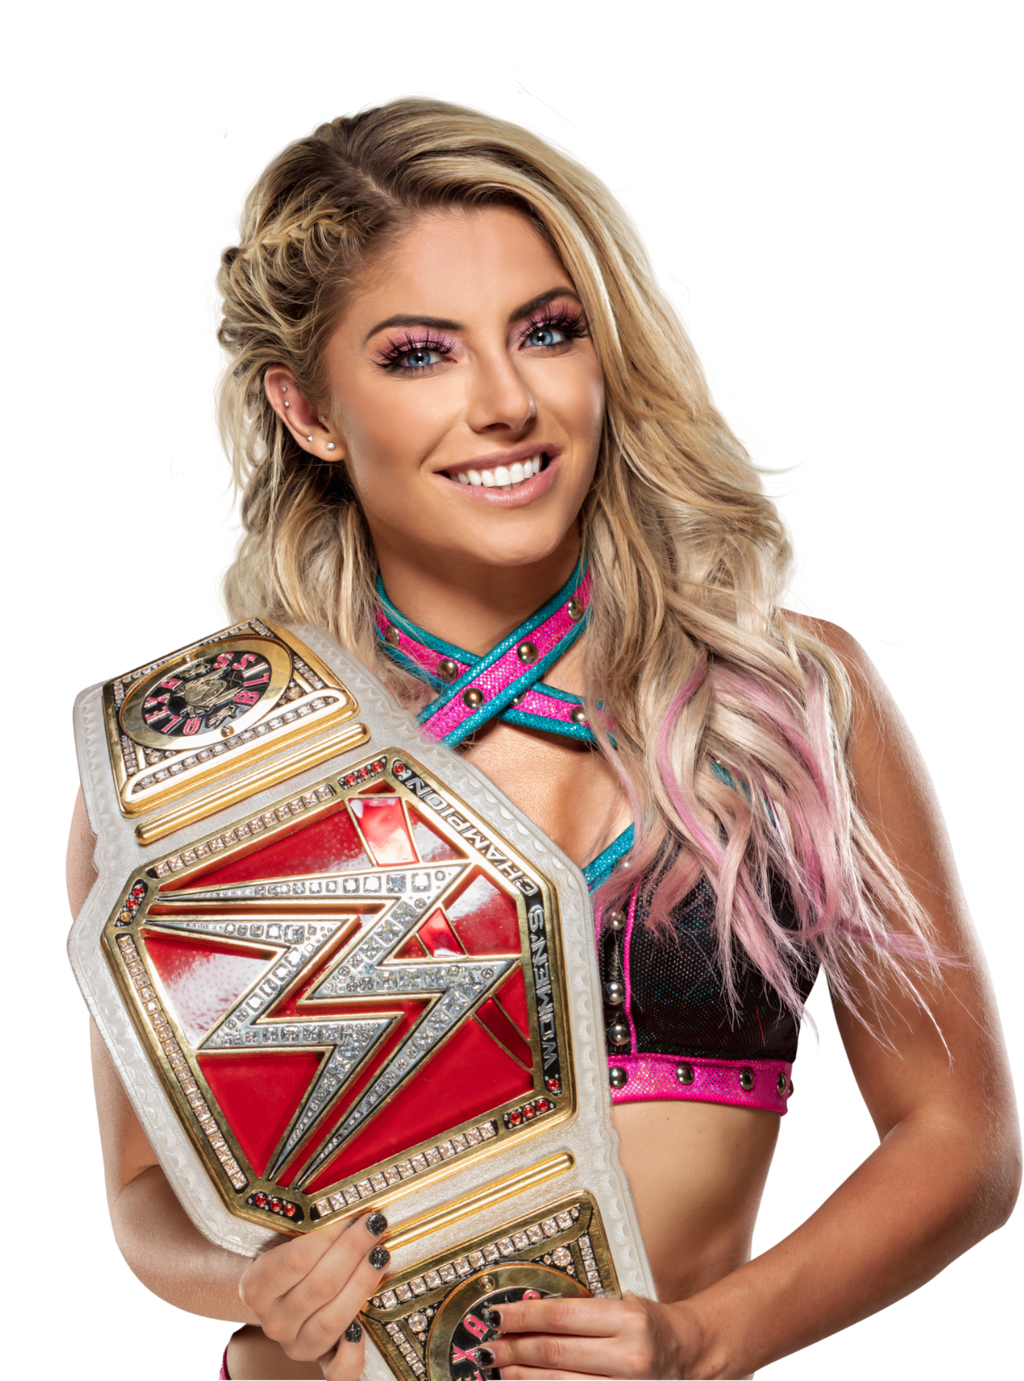 File:Alexa Bliss as Raw Women's Champion.jpg - Wikipedia